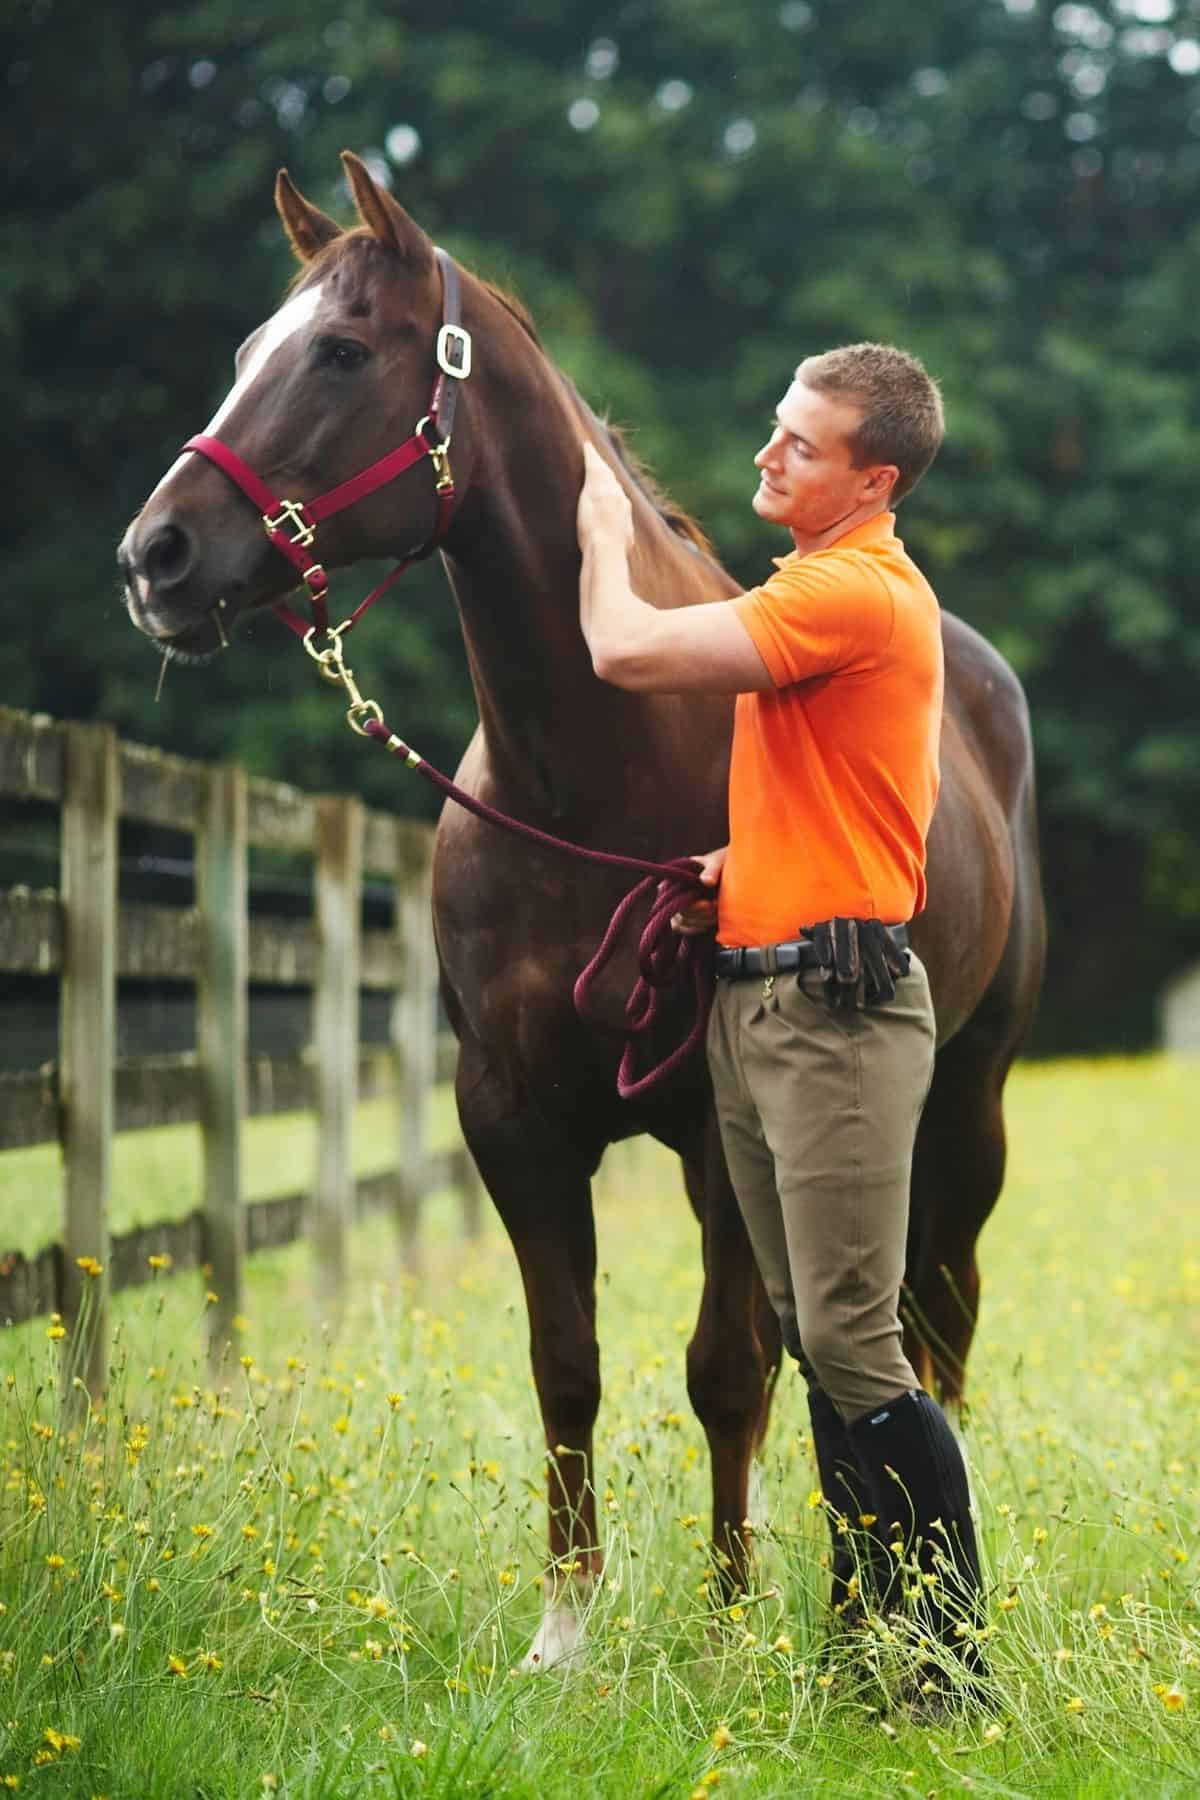 Man in orange grooming horse in field